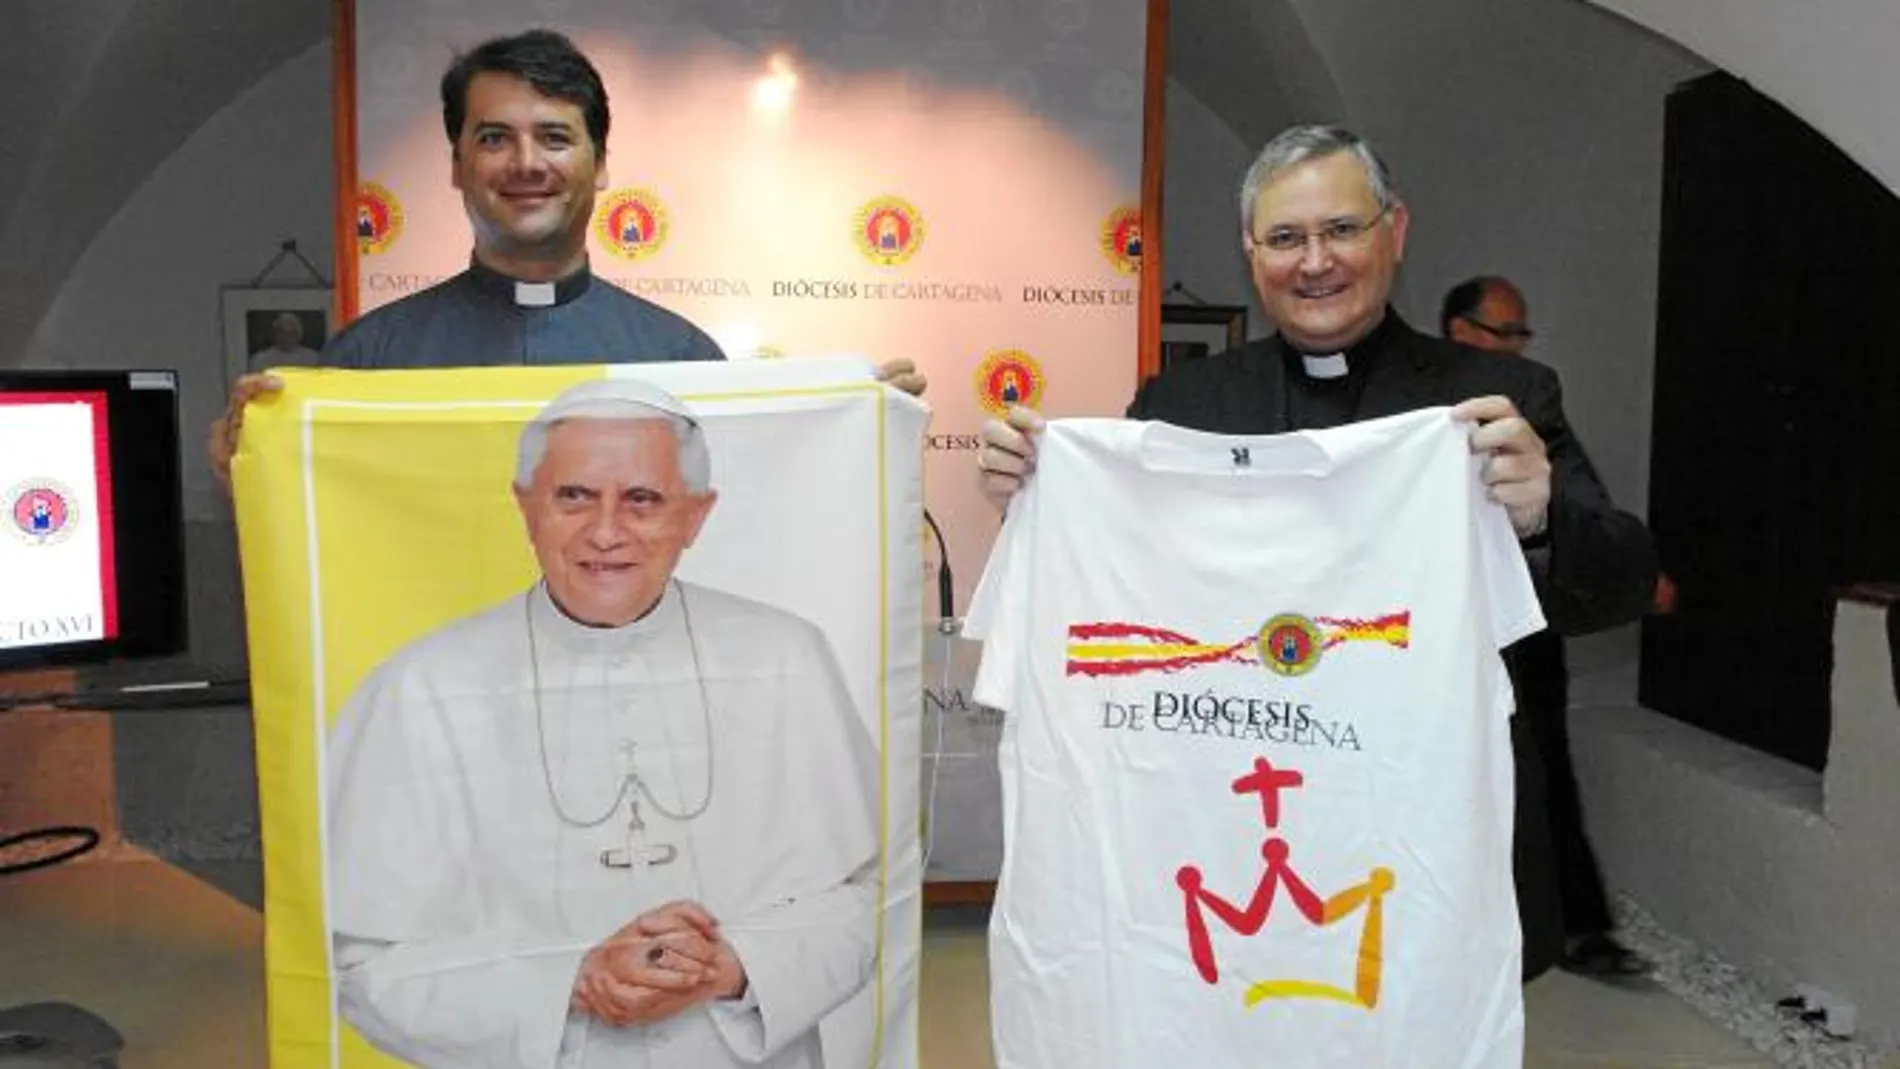 El obispo de la Diócesis de Cartagena, José Manuel Lorca Planes, animó a todos los peregrinos a que disfruten de la fiesta de la fe que es la Jornada Mundial de la Juventud